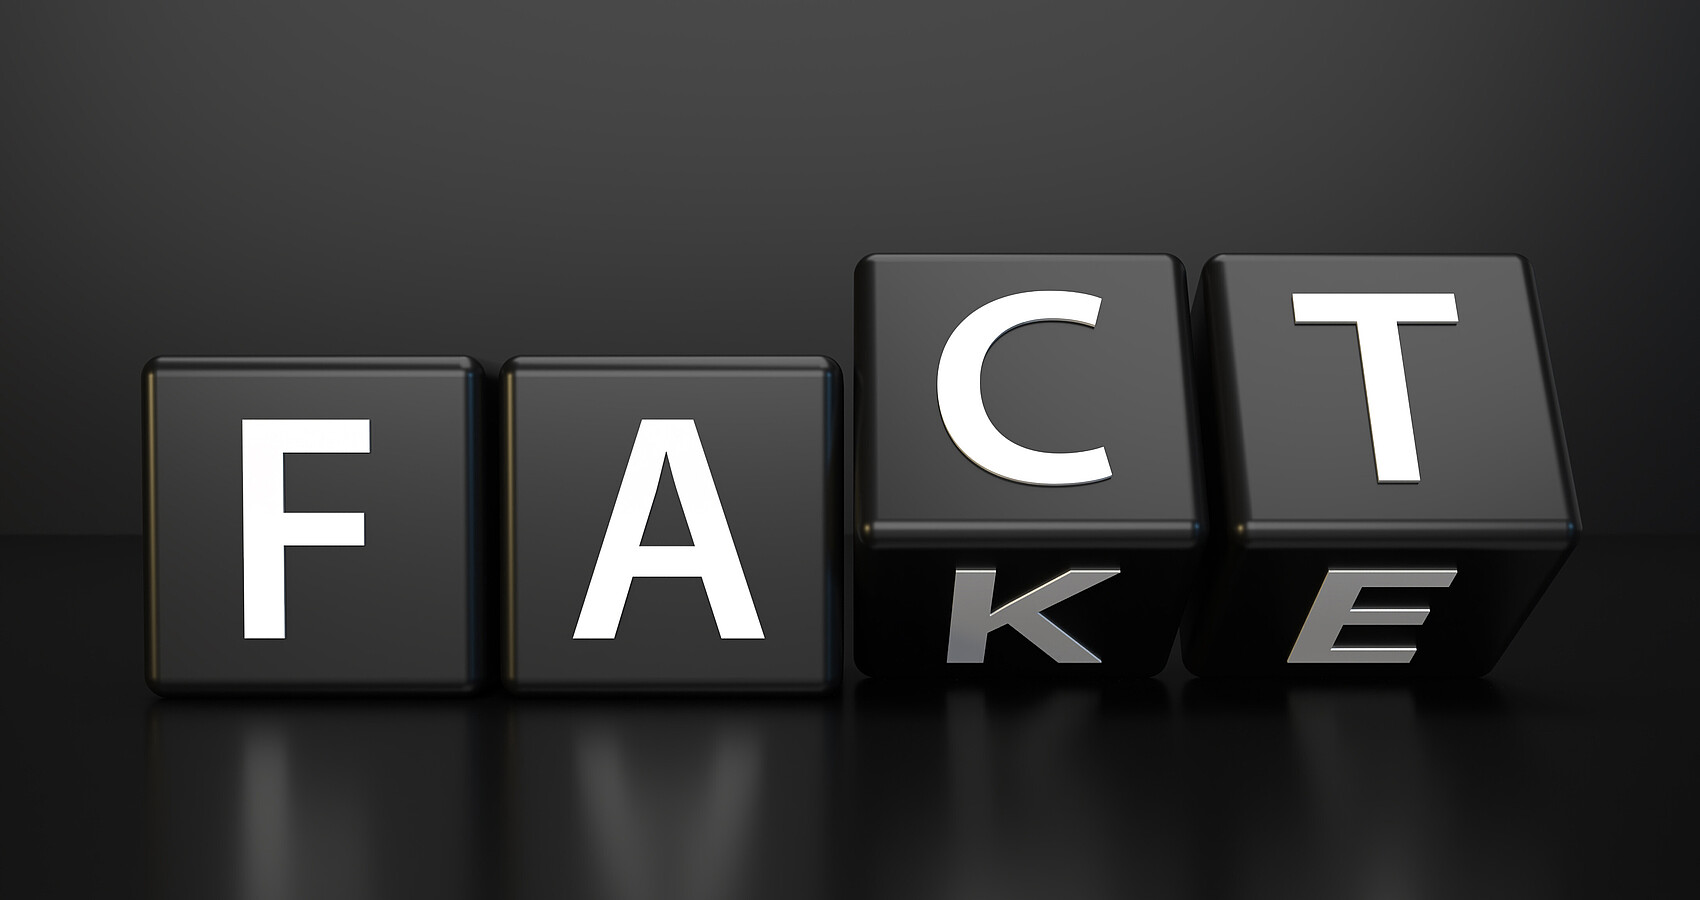 Schwarze Würfel mit Buchstaben bilden die Wörter "Fact" und "Fake".